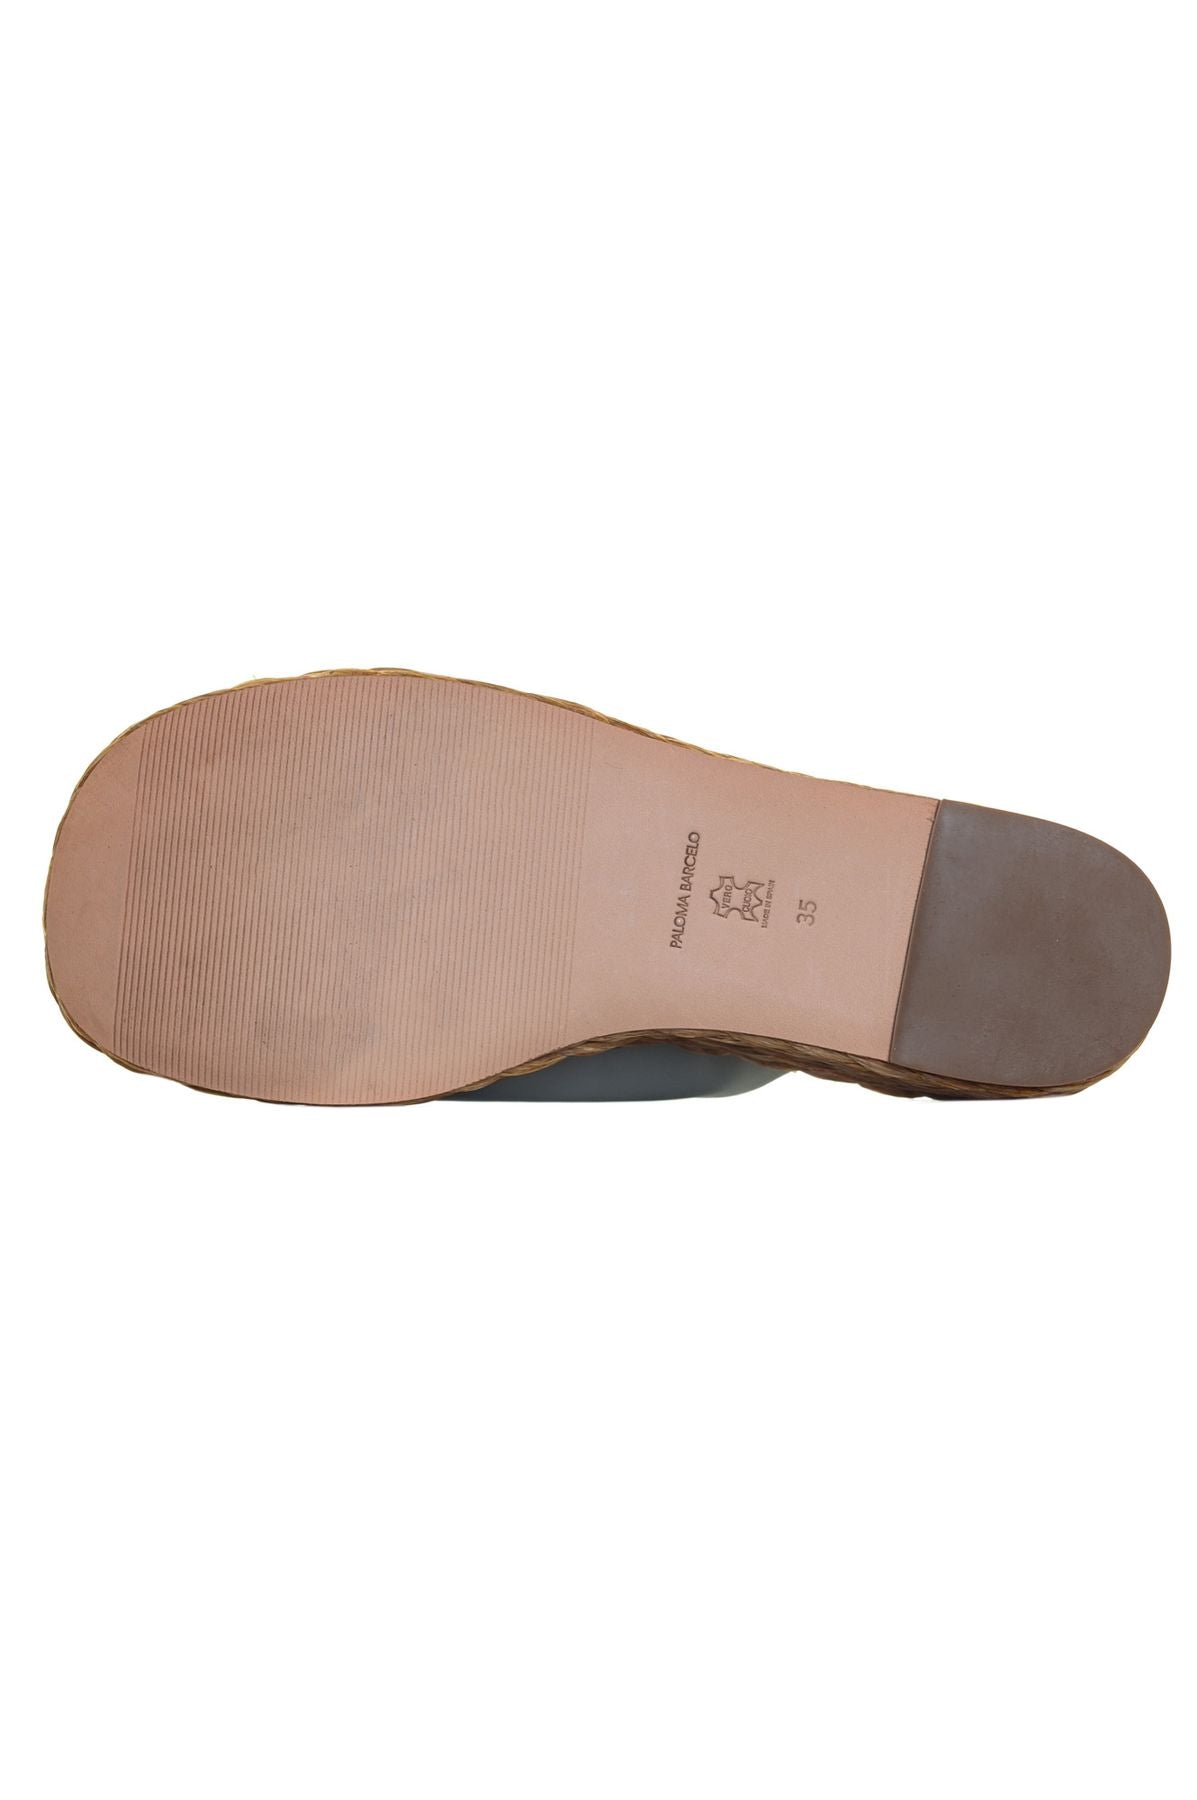 PALOMA BARCELÓ Spring/Summer Sandals 3922602